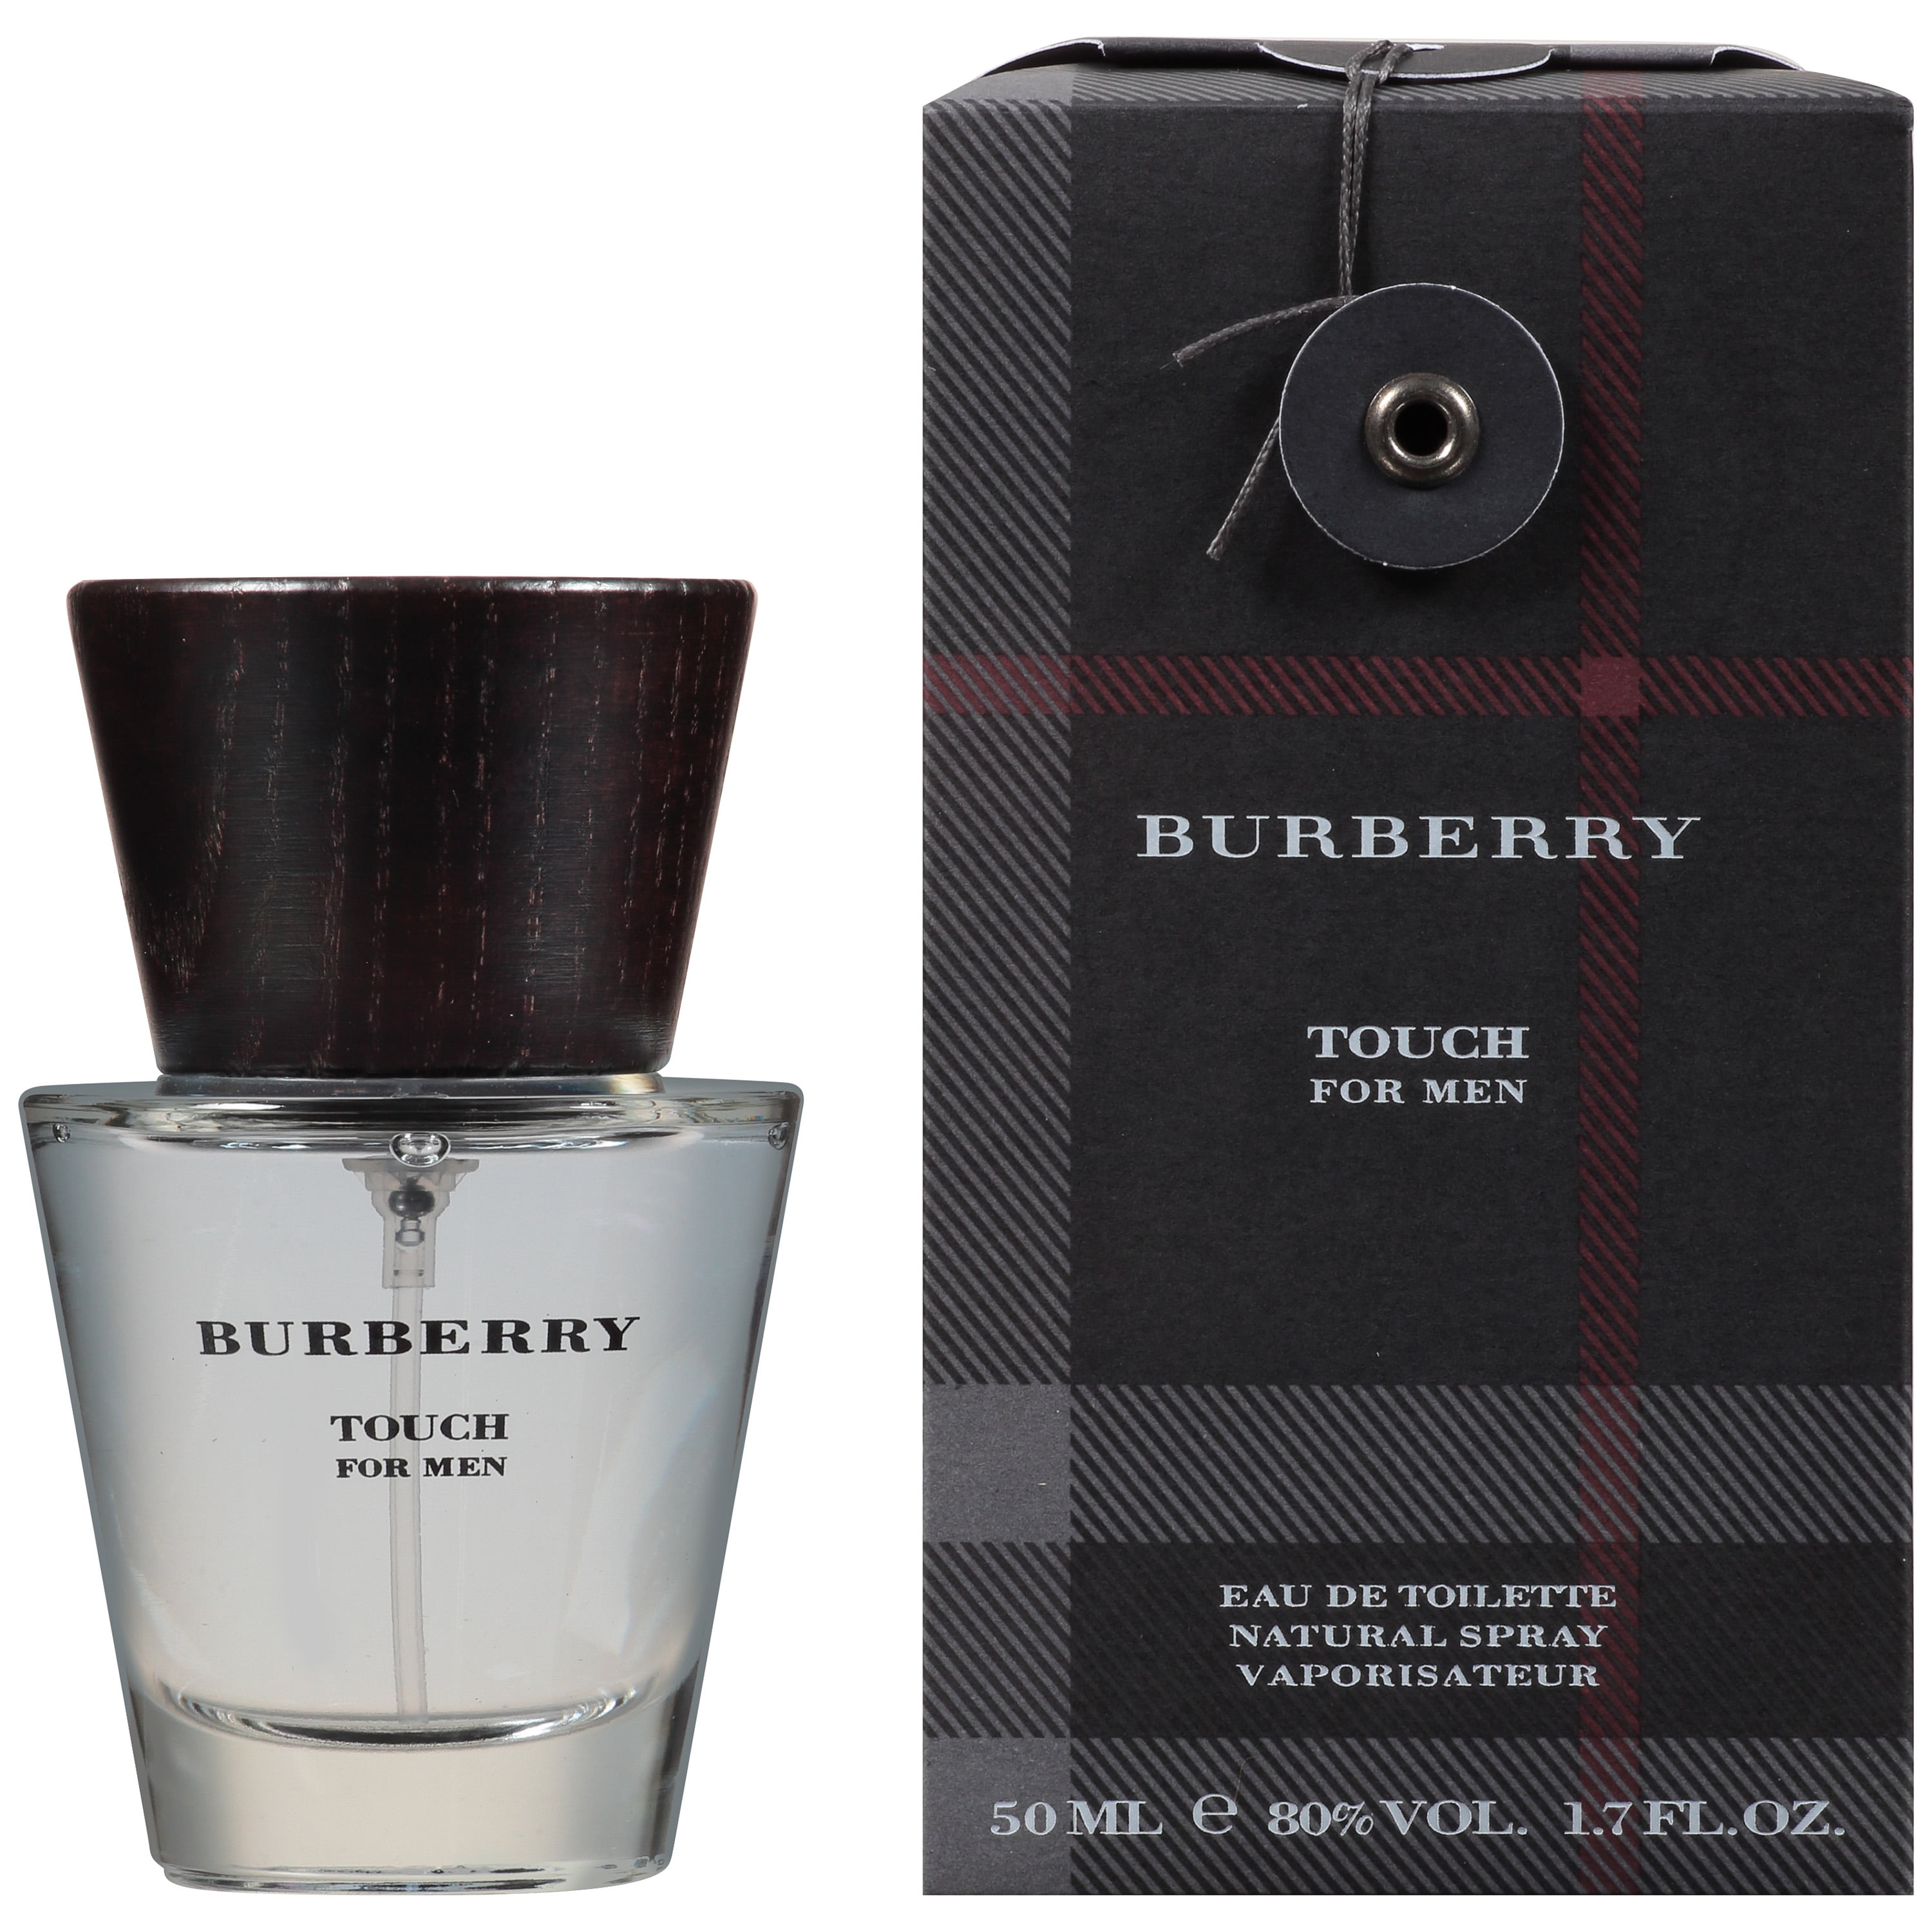 Burberry Touch Fragrance Eau de Toilette Spray for Men, 1.7 fl oz